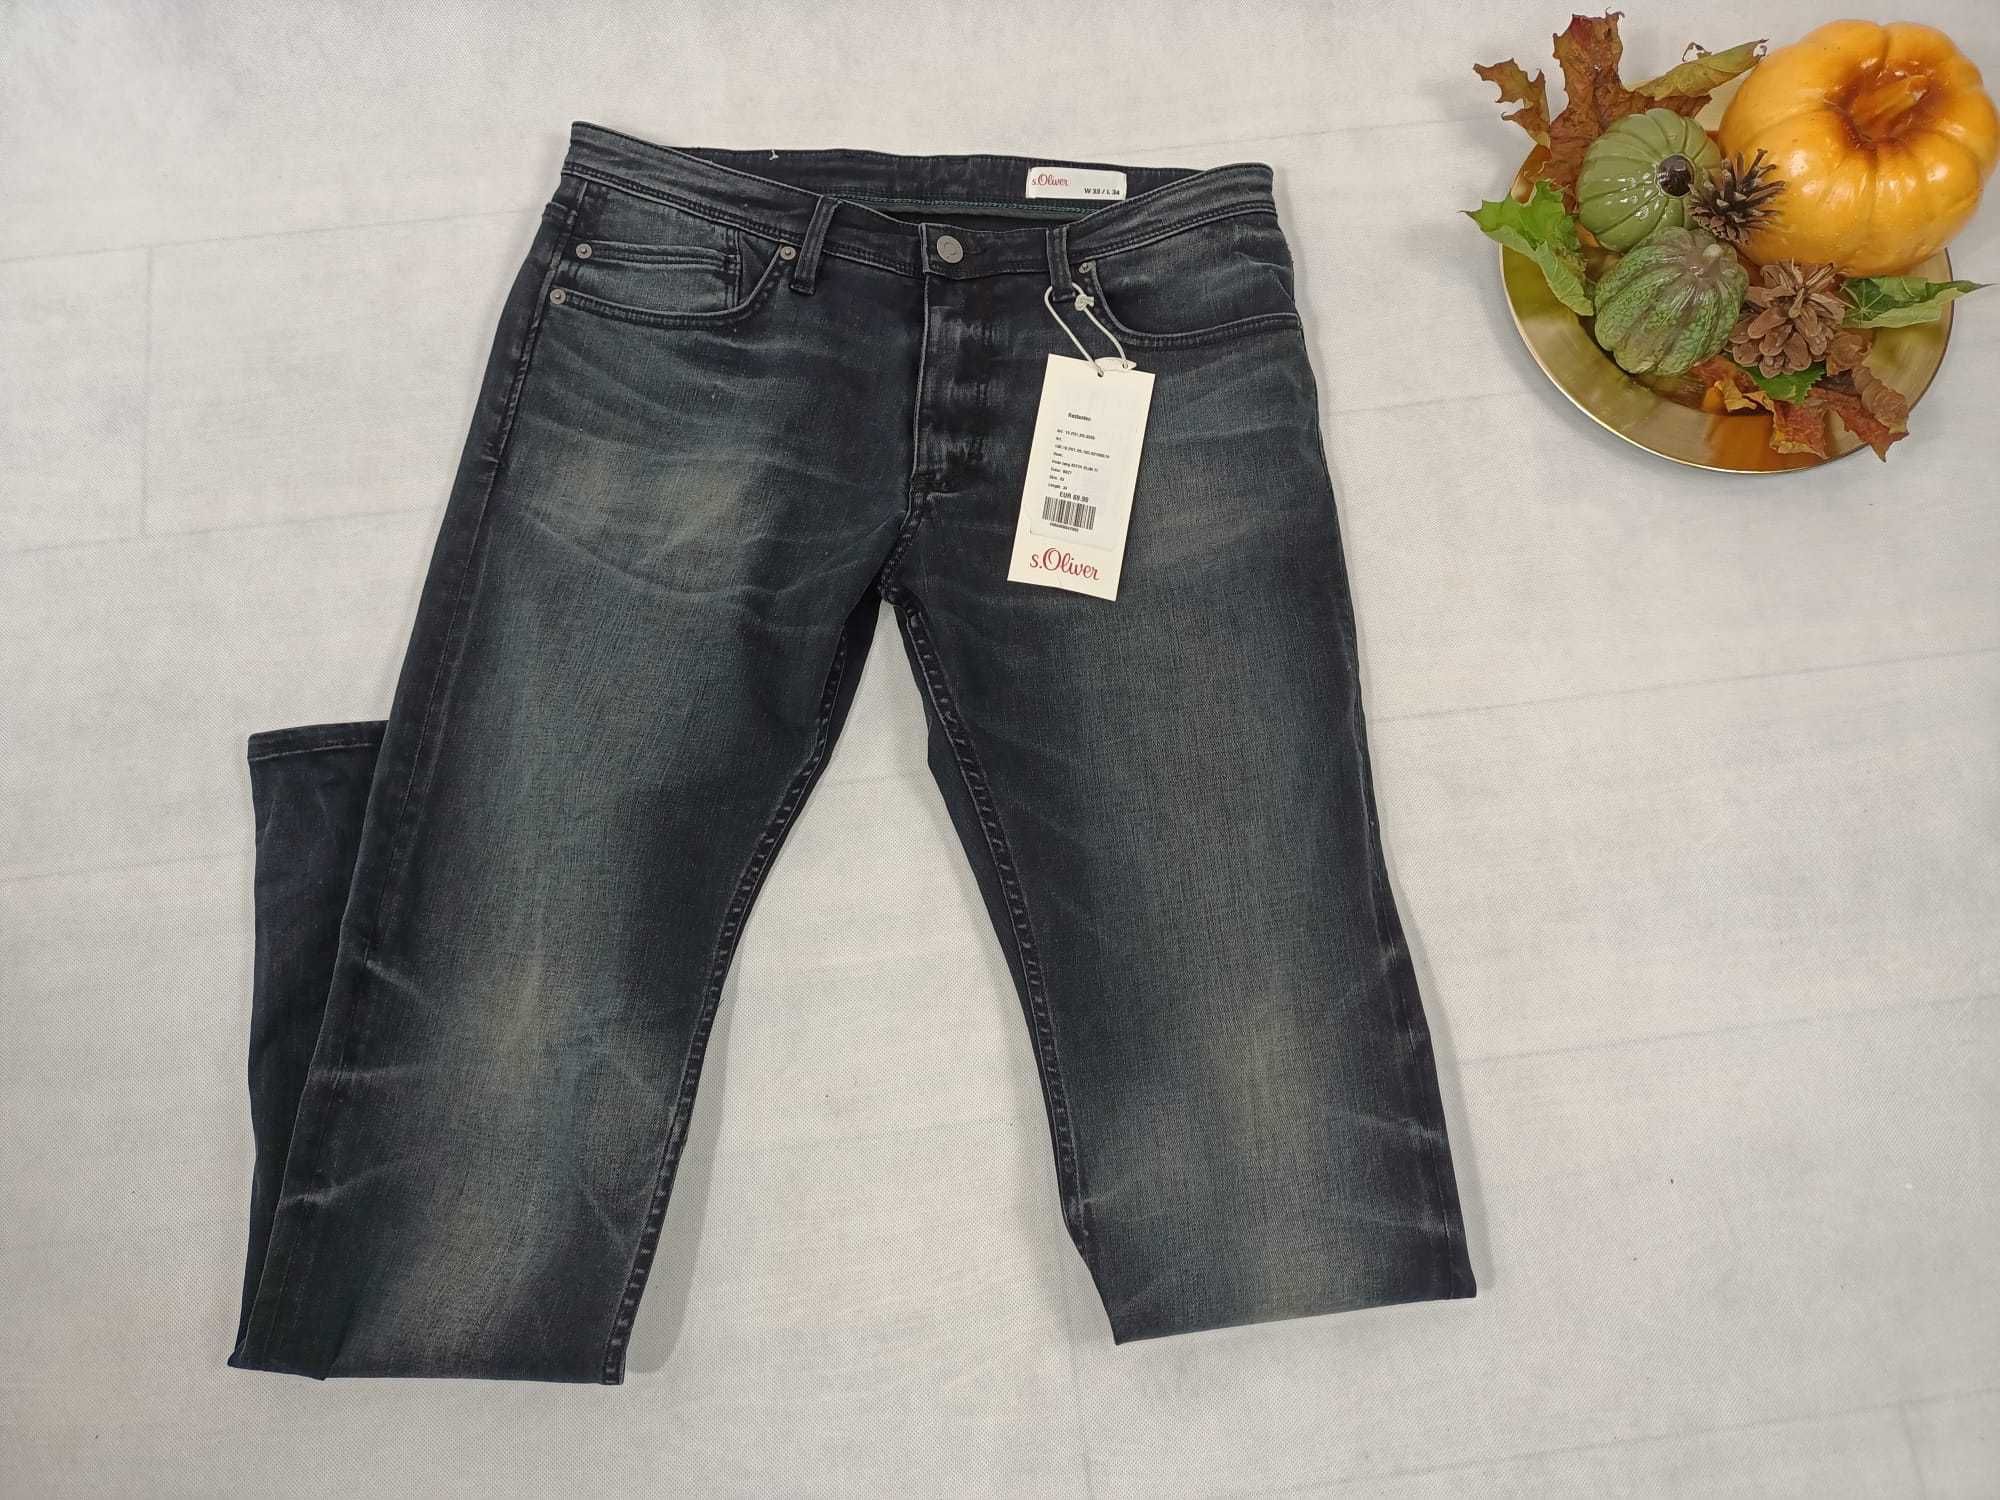 jeans spodnie męskie s.olivier 33/34 nowe metki